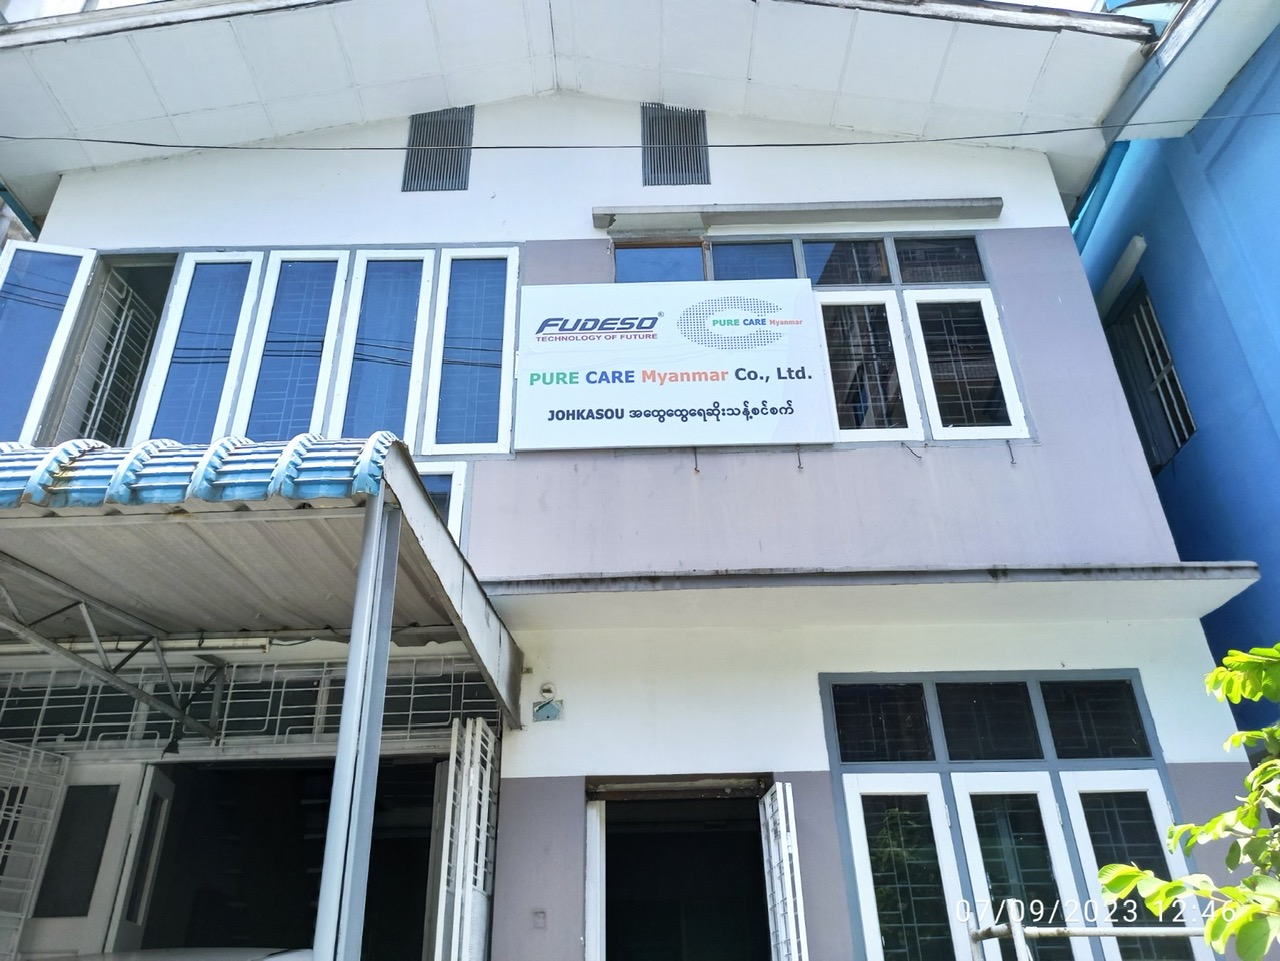 FUDESO cấp chứng nhận phân phối độc quyền cho PureCare Myanmar Co., Ltd trong phạm vi thị trường Myanmar